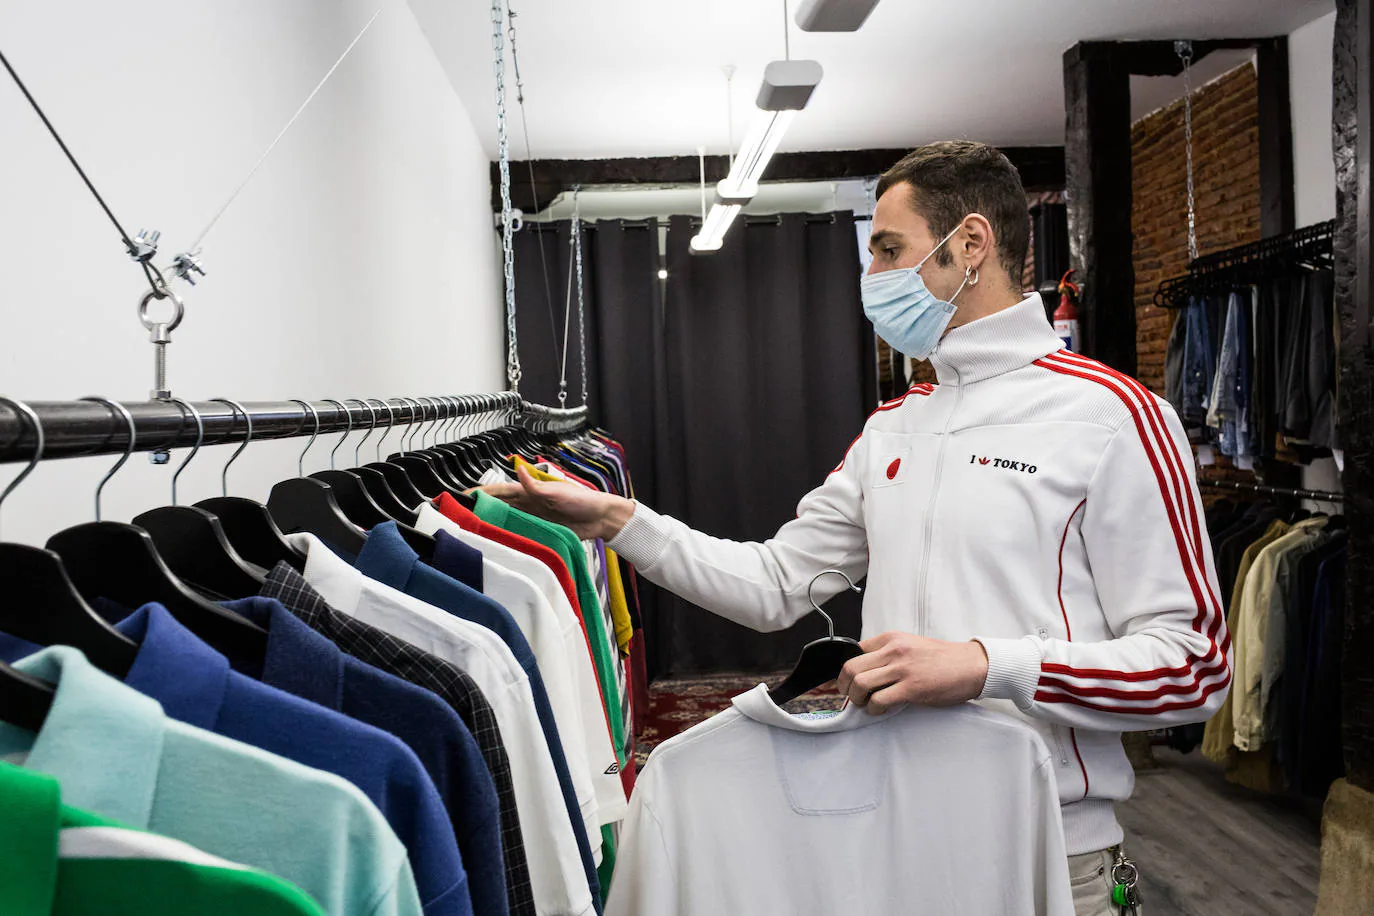 Dos jóvenes abren una tienda 'vintage' ropa de mano Bilbao | El Correo